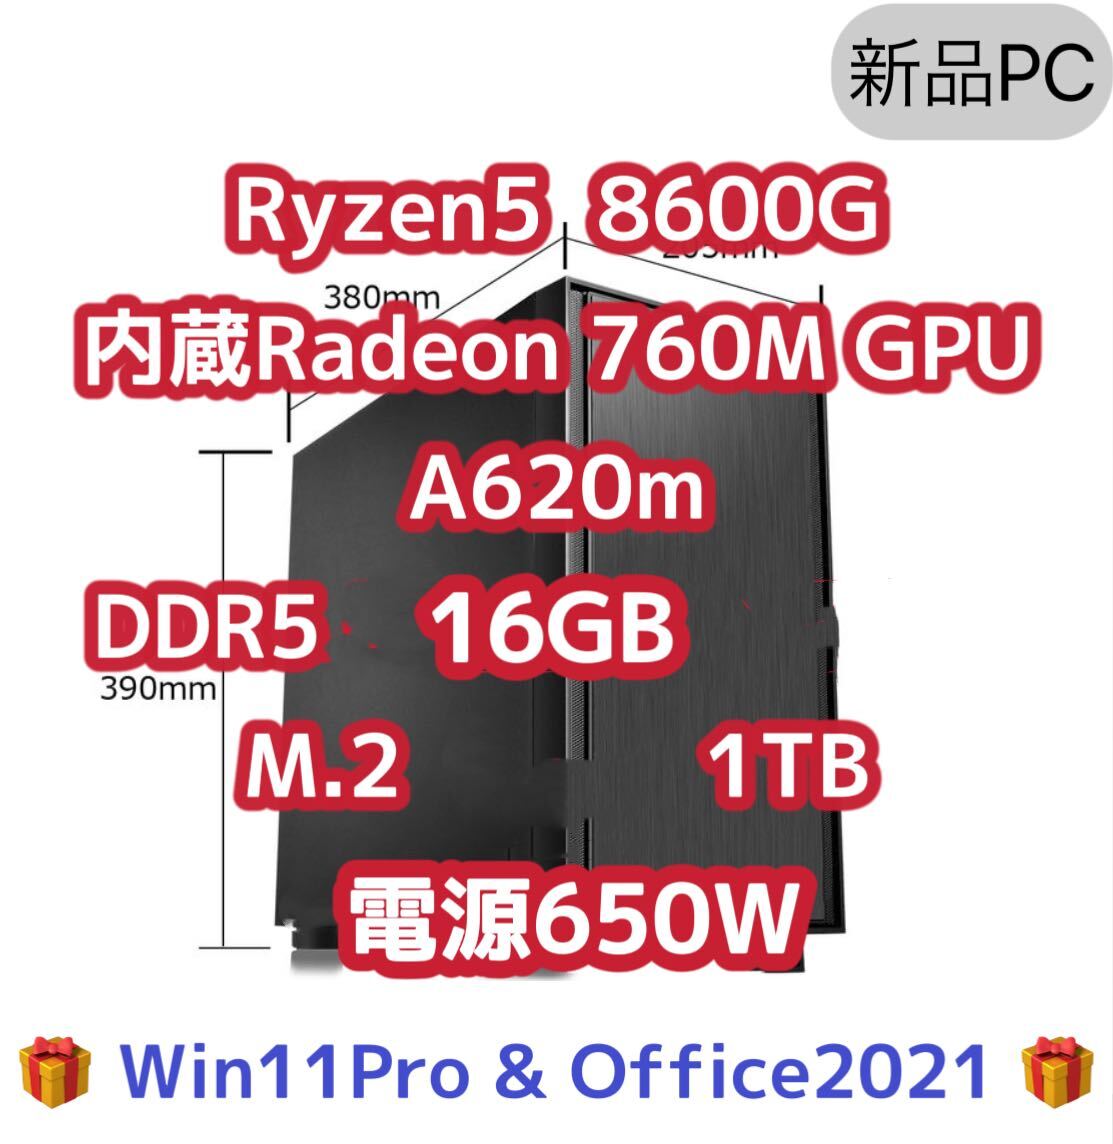 【新品】Ryzen5 8600g 内蔵グラフィック Radeon 760M DDR5 16GB メモリ asus A620m SSD 1TB 検索用 5600g 5700g AI gameの画像1